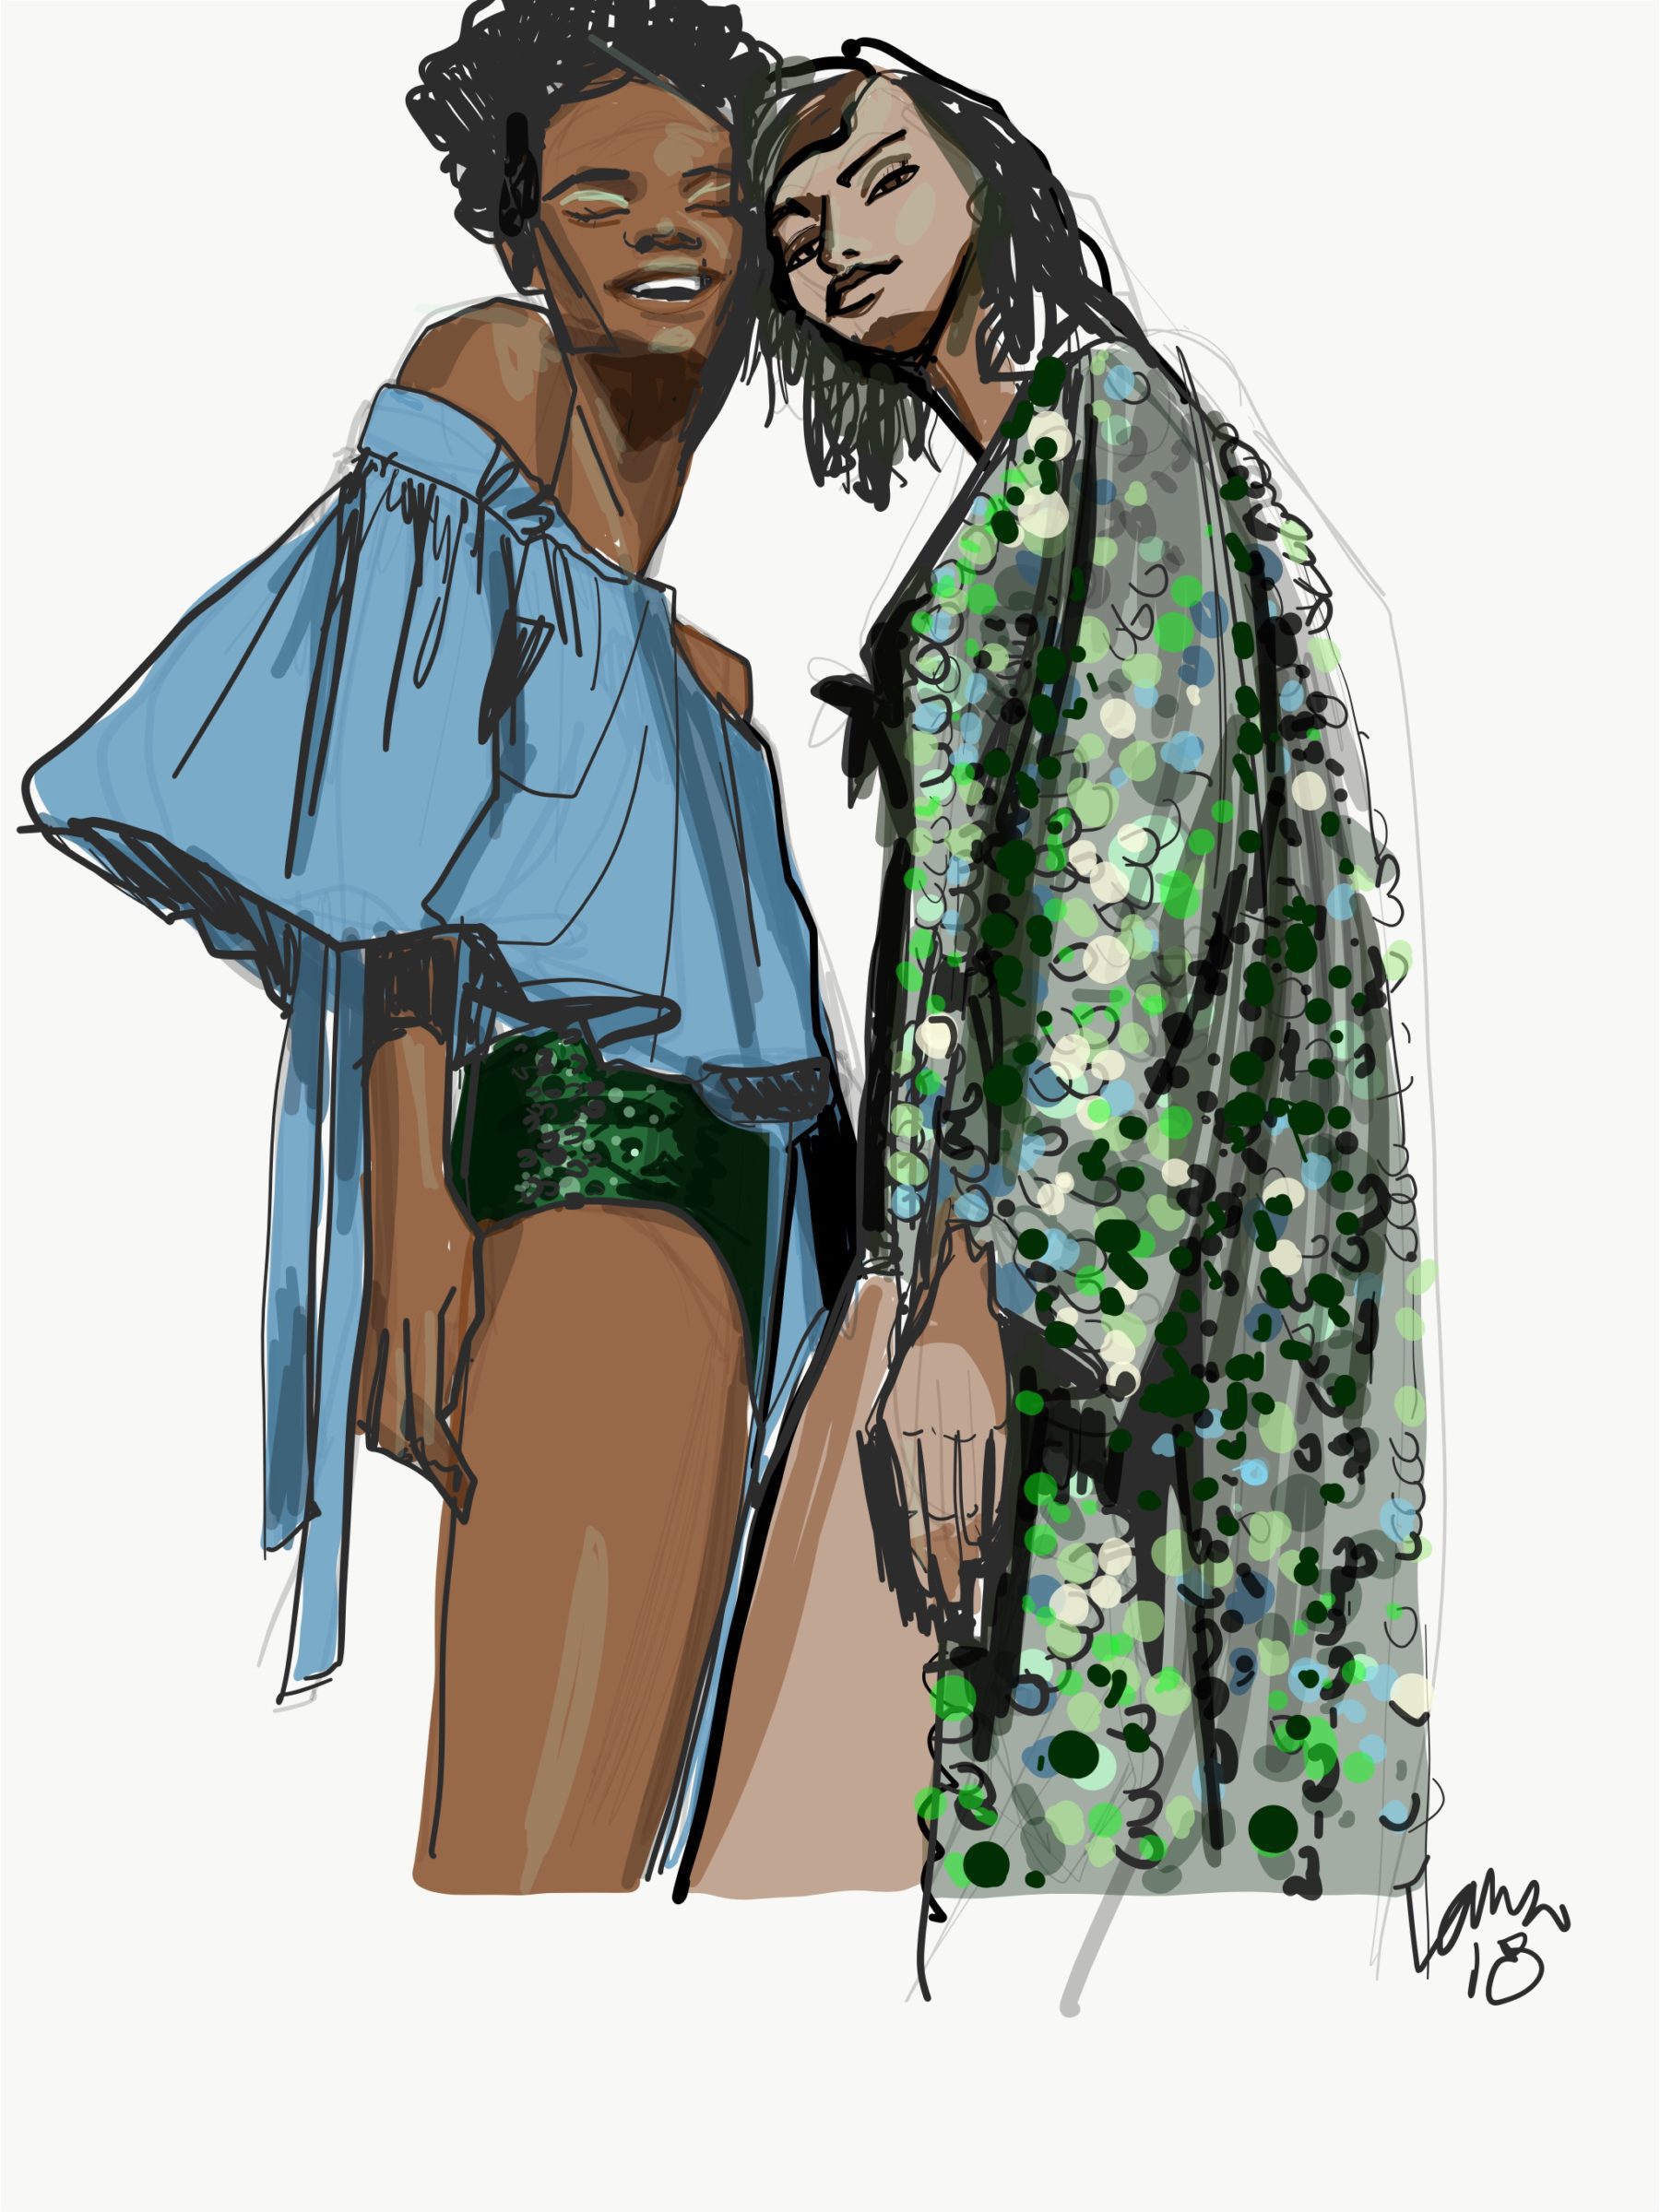 sequins in digital fashion desgin illustration by Laura VOlpintesta 